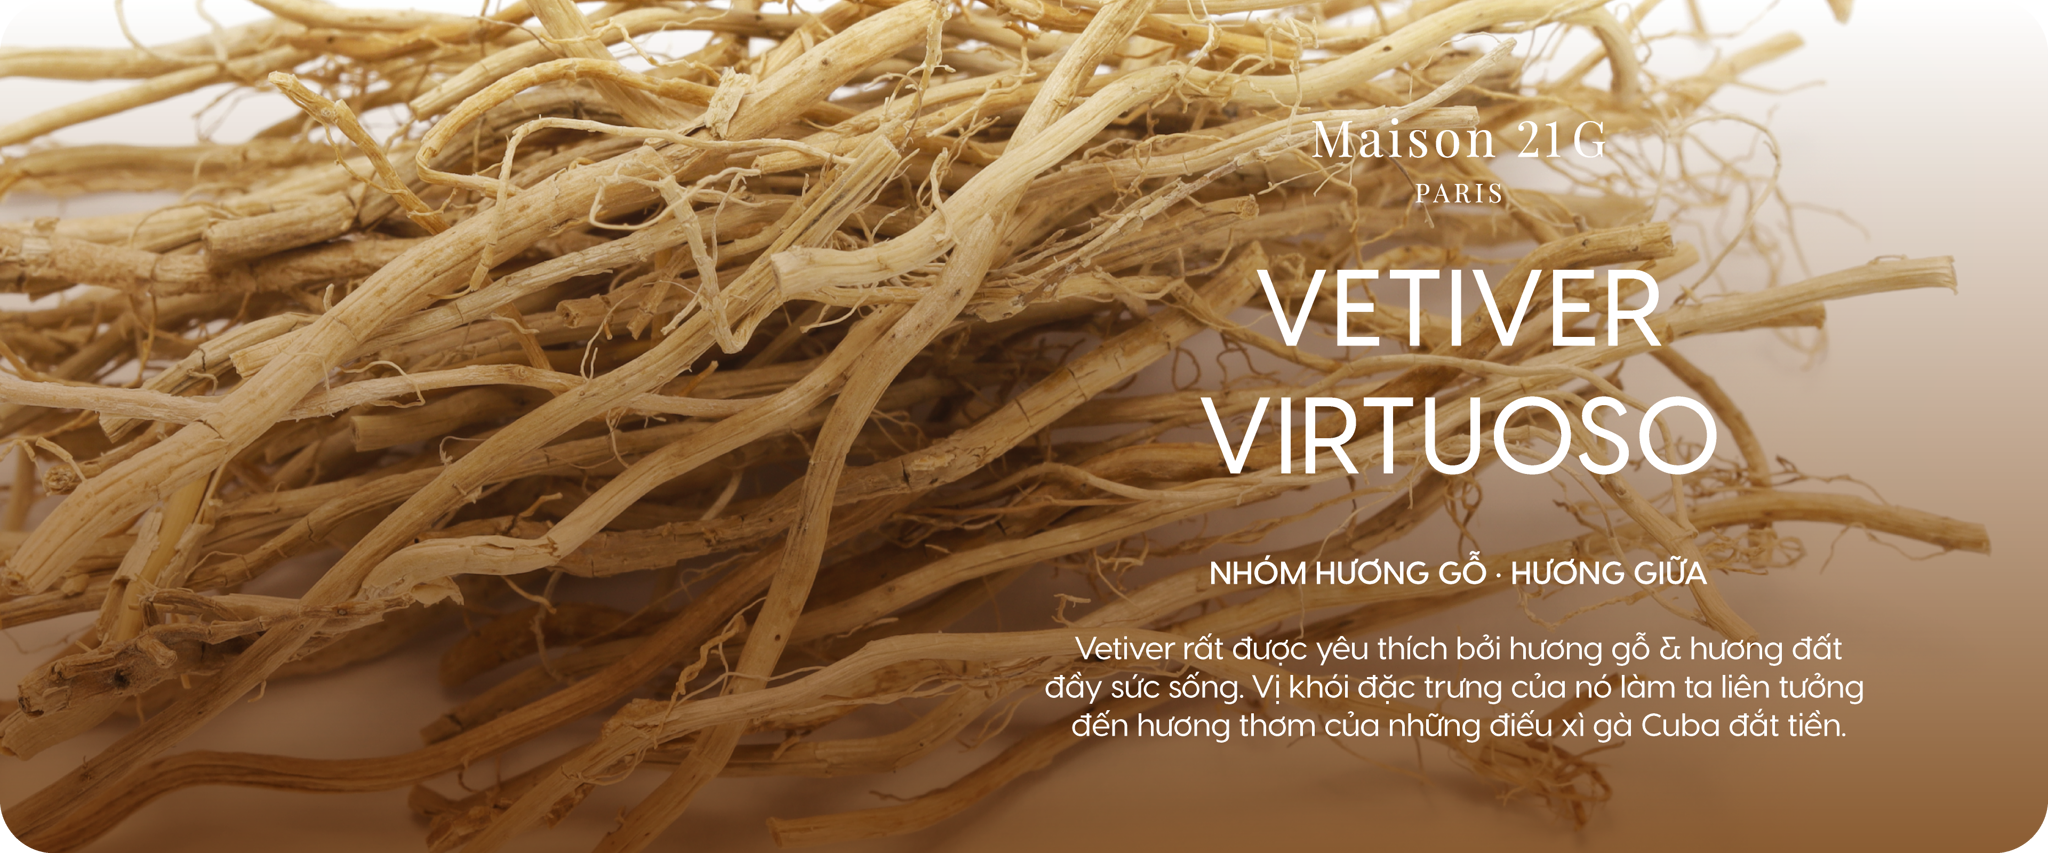 Vetiver Virtuoso - Cỏ hương lau